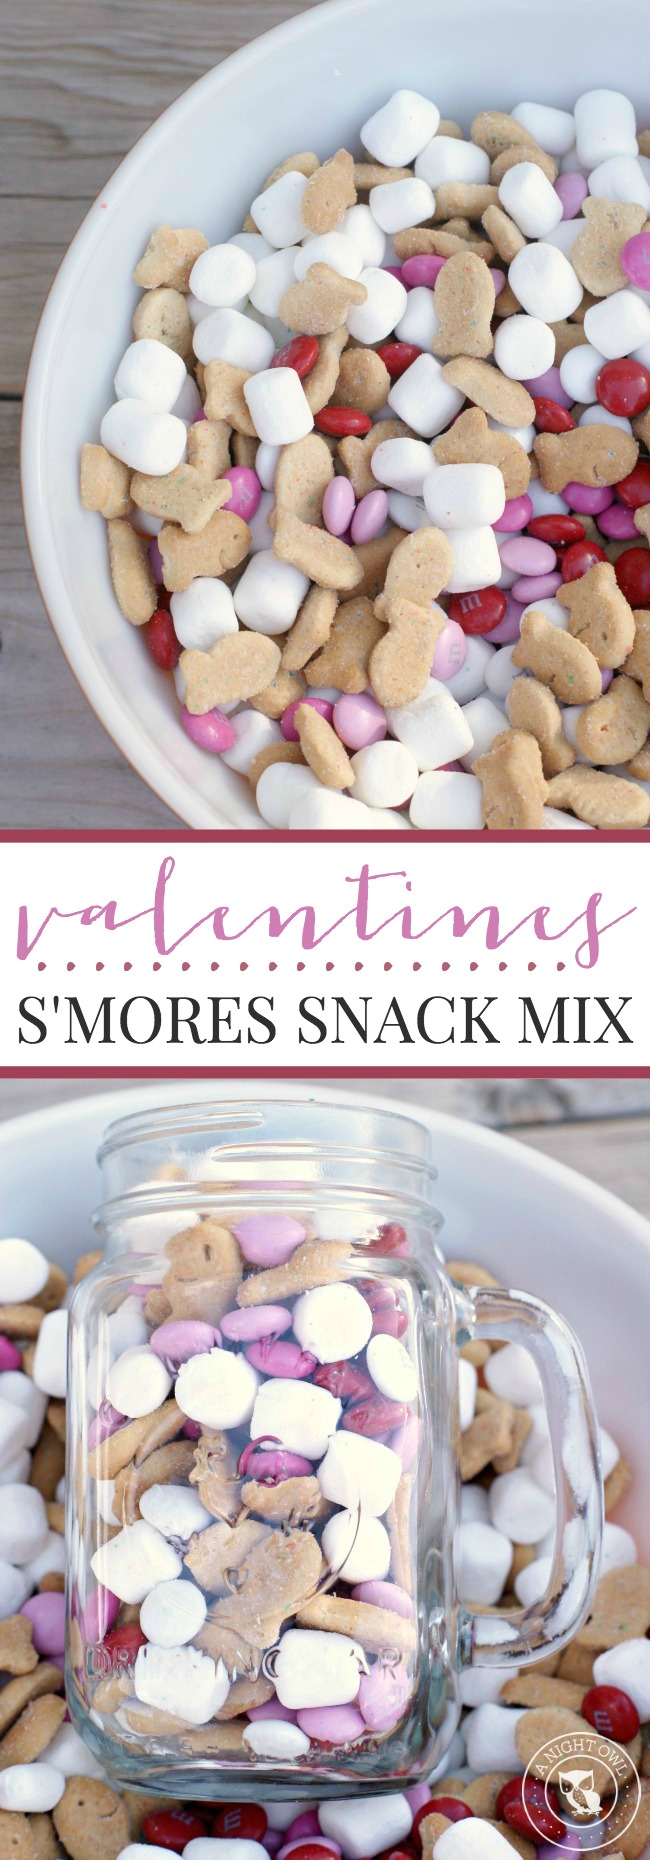 Valentines Smores Snack Mix | anightowlblog.com